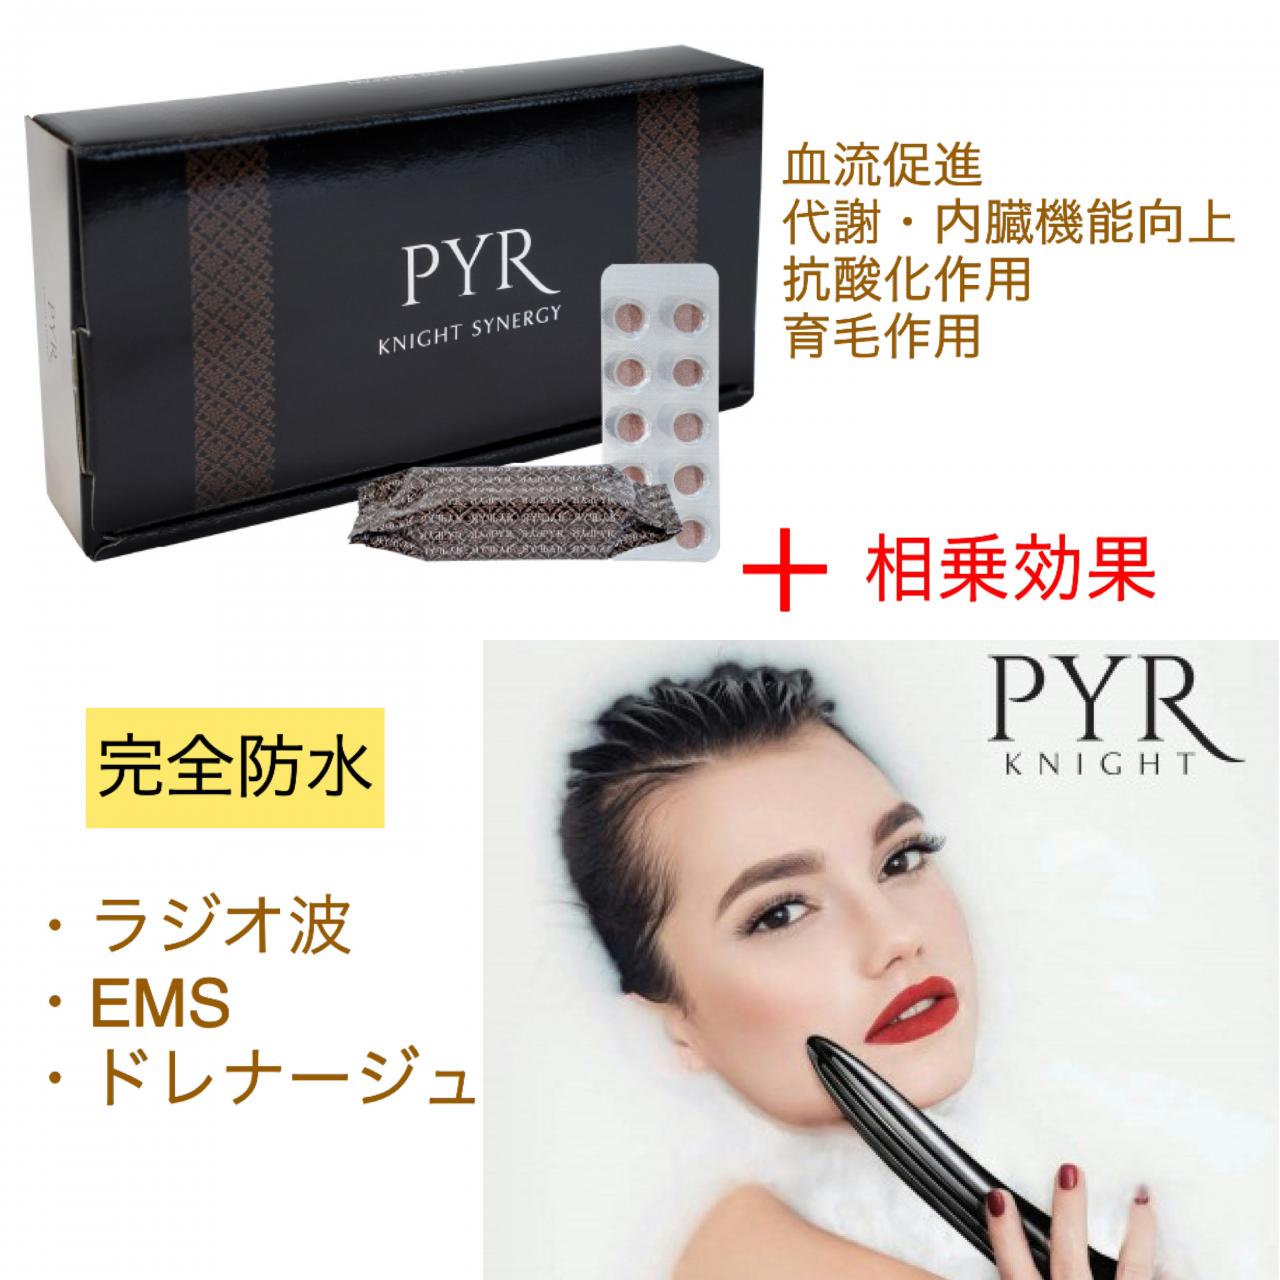 パイラナイト PYR KNIGHT 美顔器 - 美容/健康